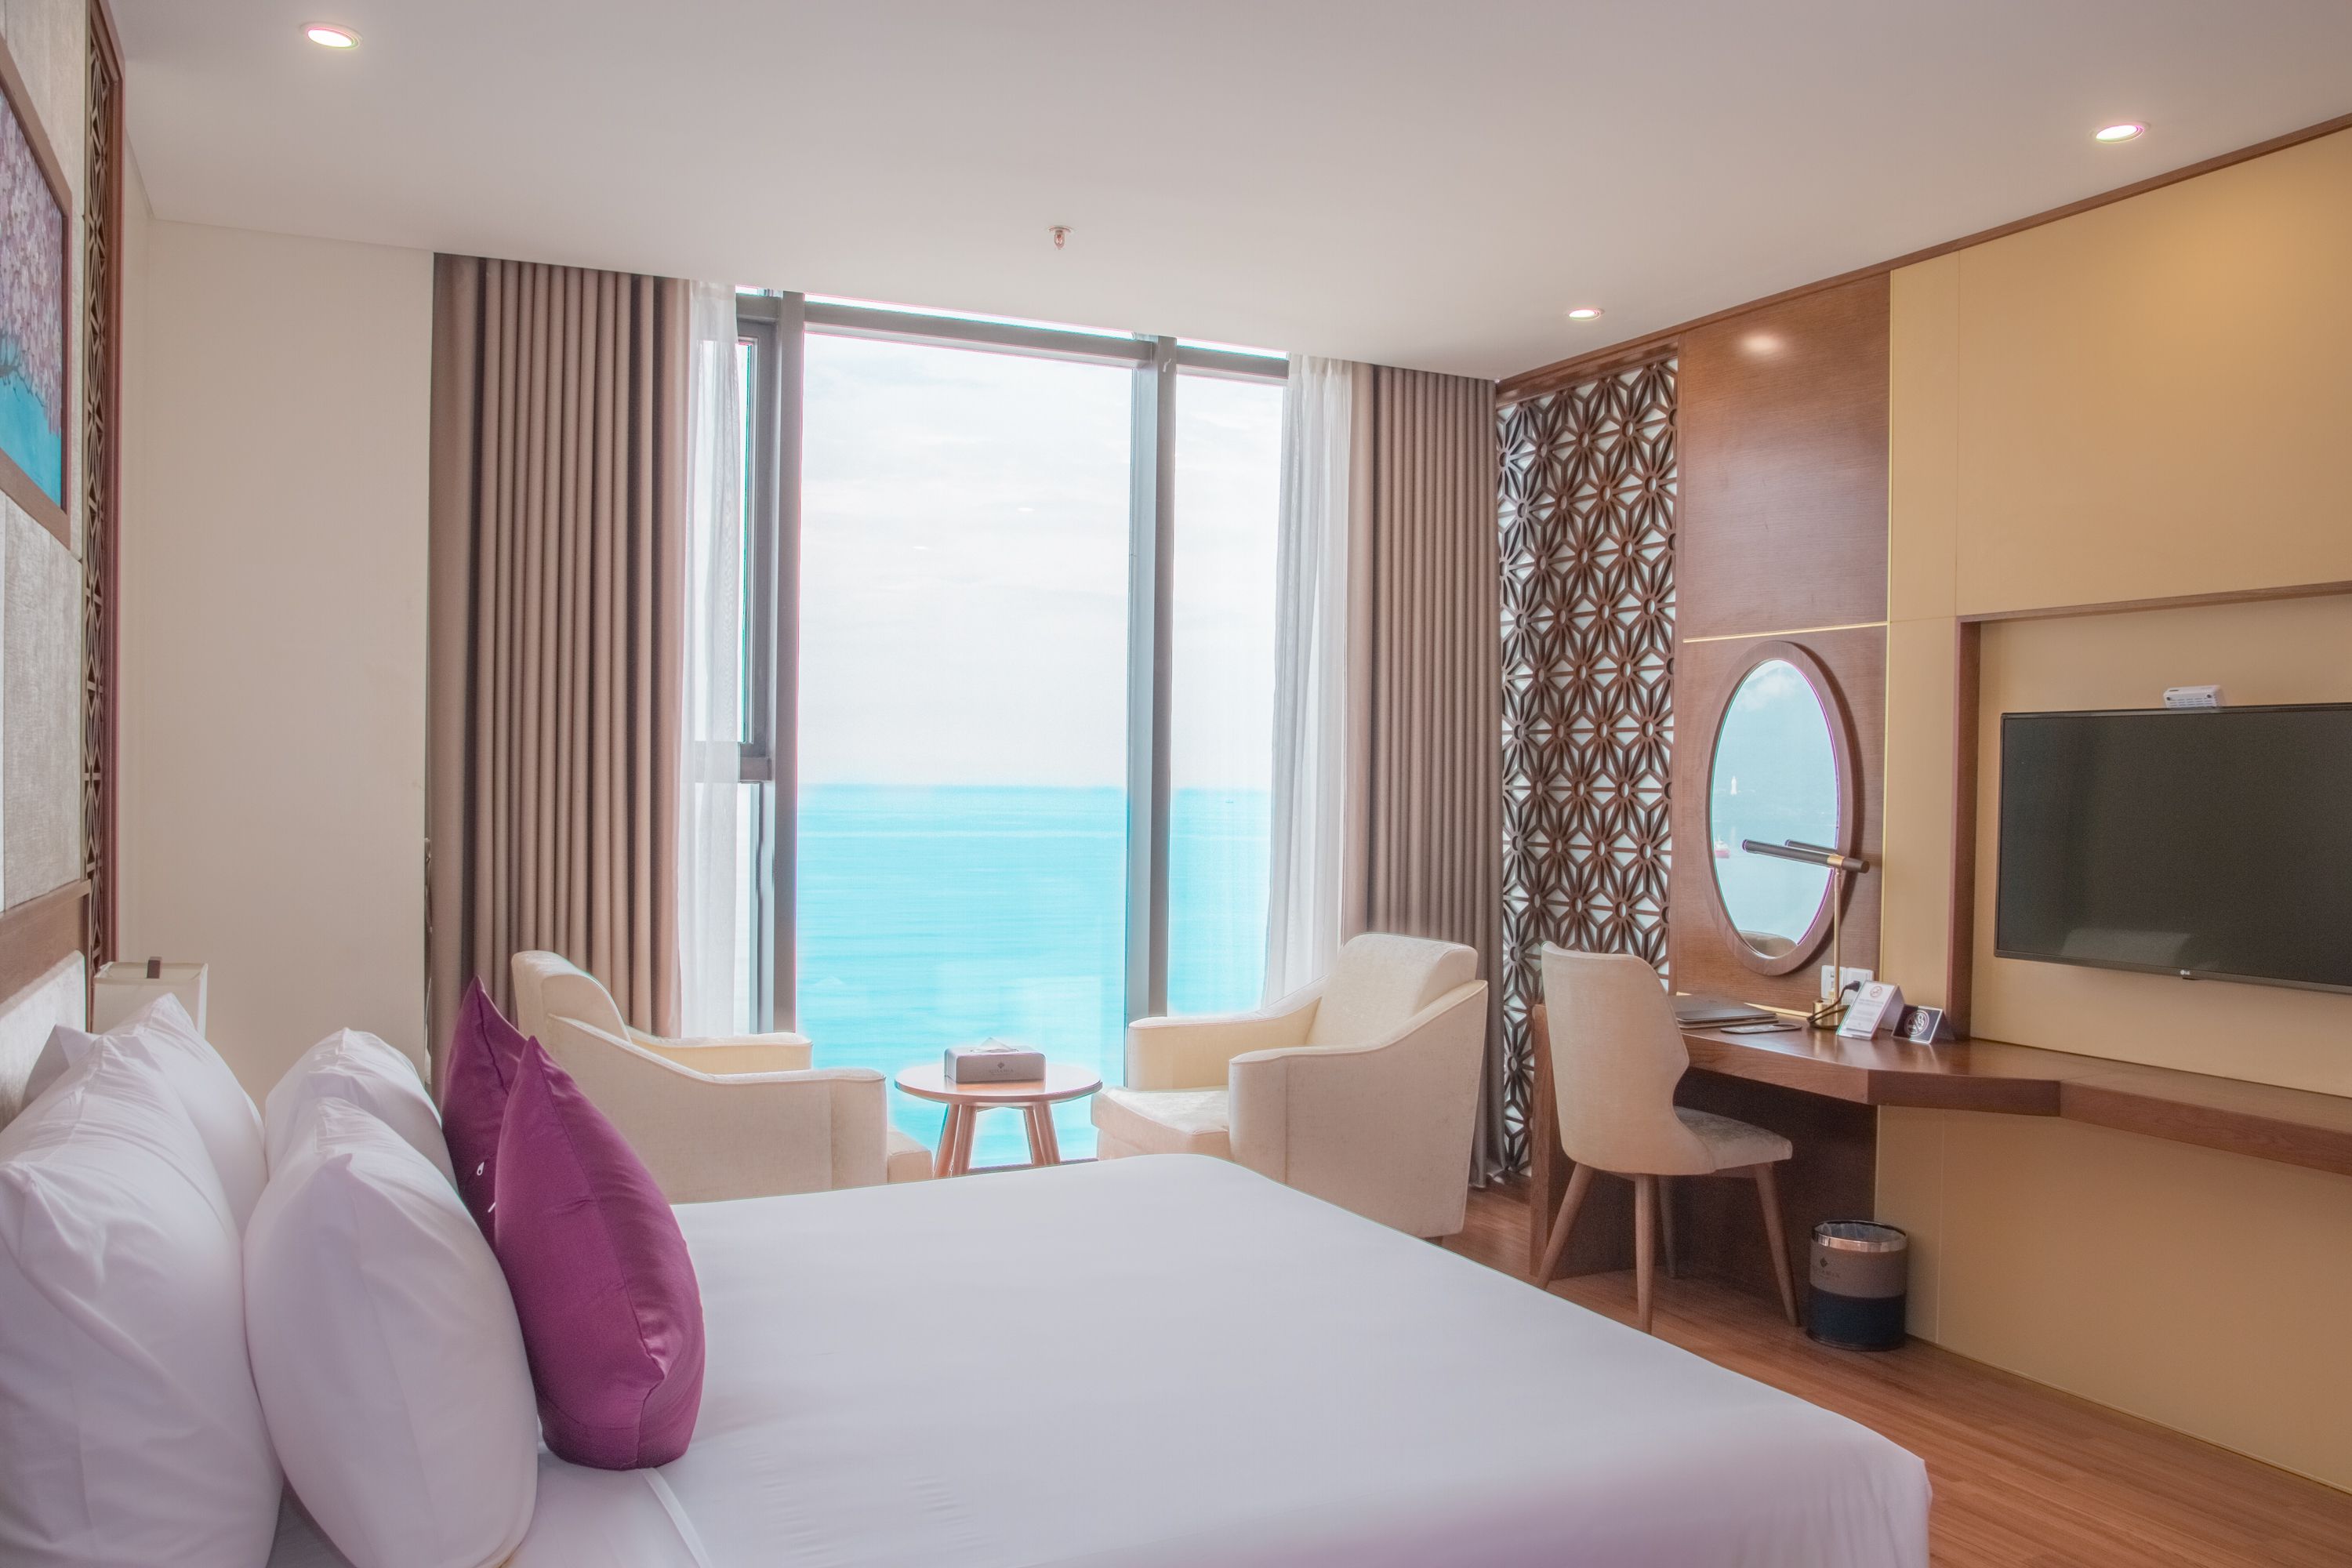 KHUYẾN MÃI LỚN CHÀO HÈ 2020 - XUA TAN NÓNG BỨC – TRỌN NIỀM VUI CÙNG KHÁCH SẠN DỊCH VỤ TIÊU CHUẨN 5 SAO Rosamia Da Nang Hotelkhách sạn biển 5 sao đẹp nhất Đà Nẵng